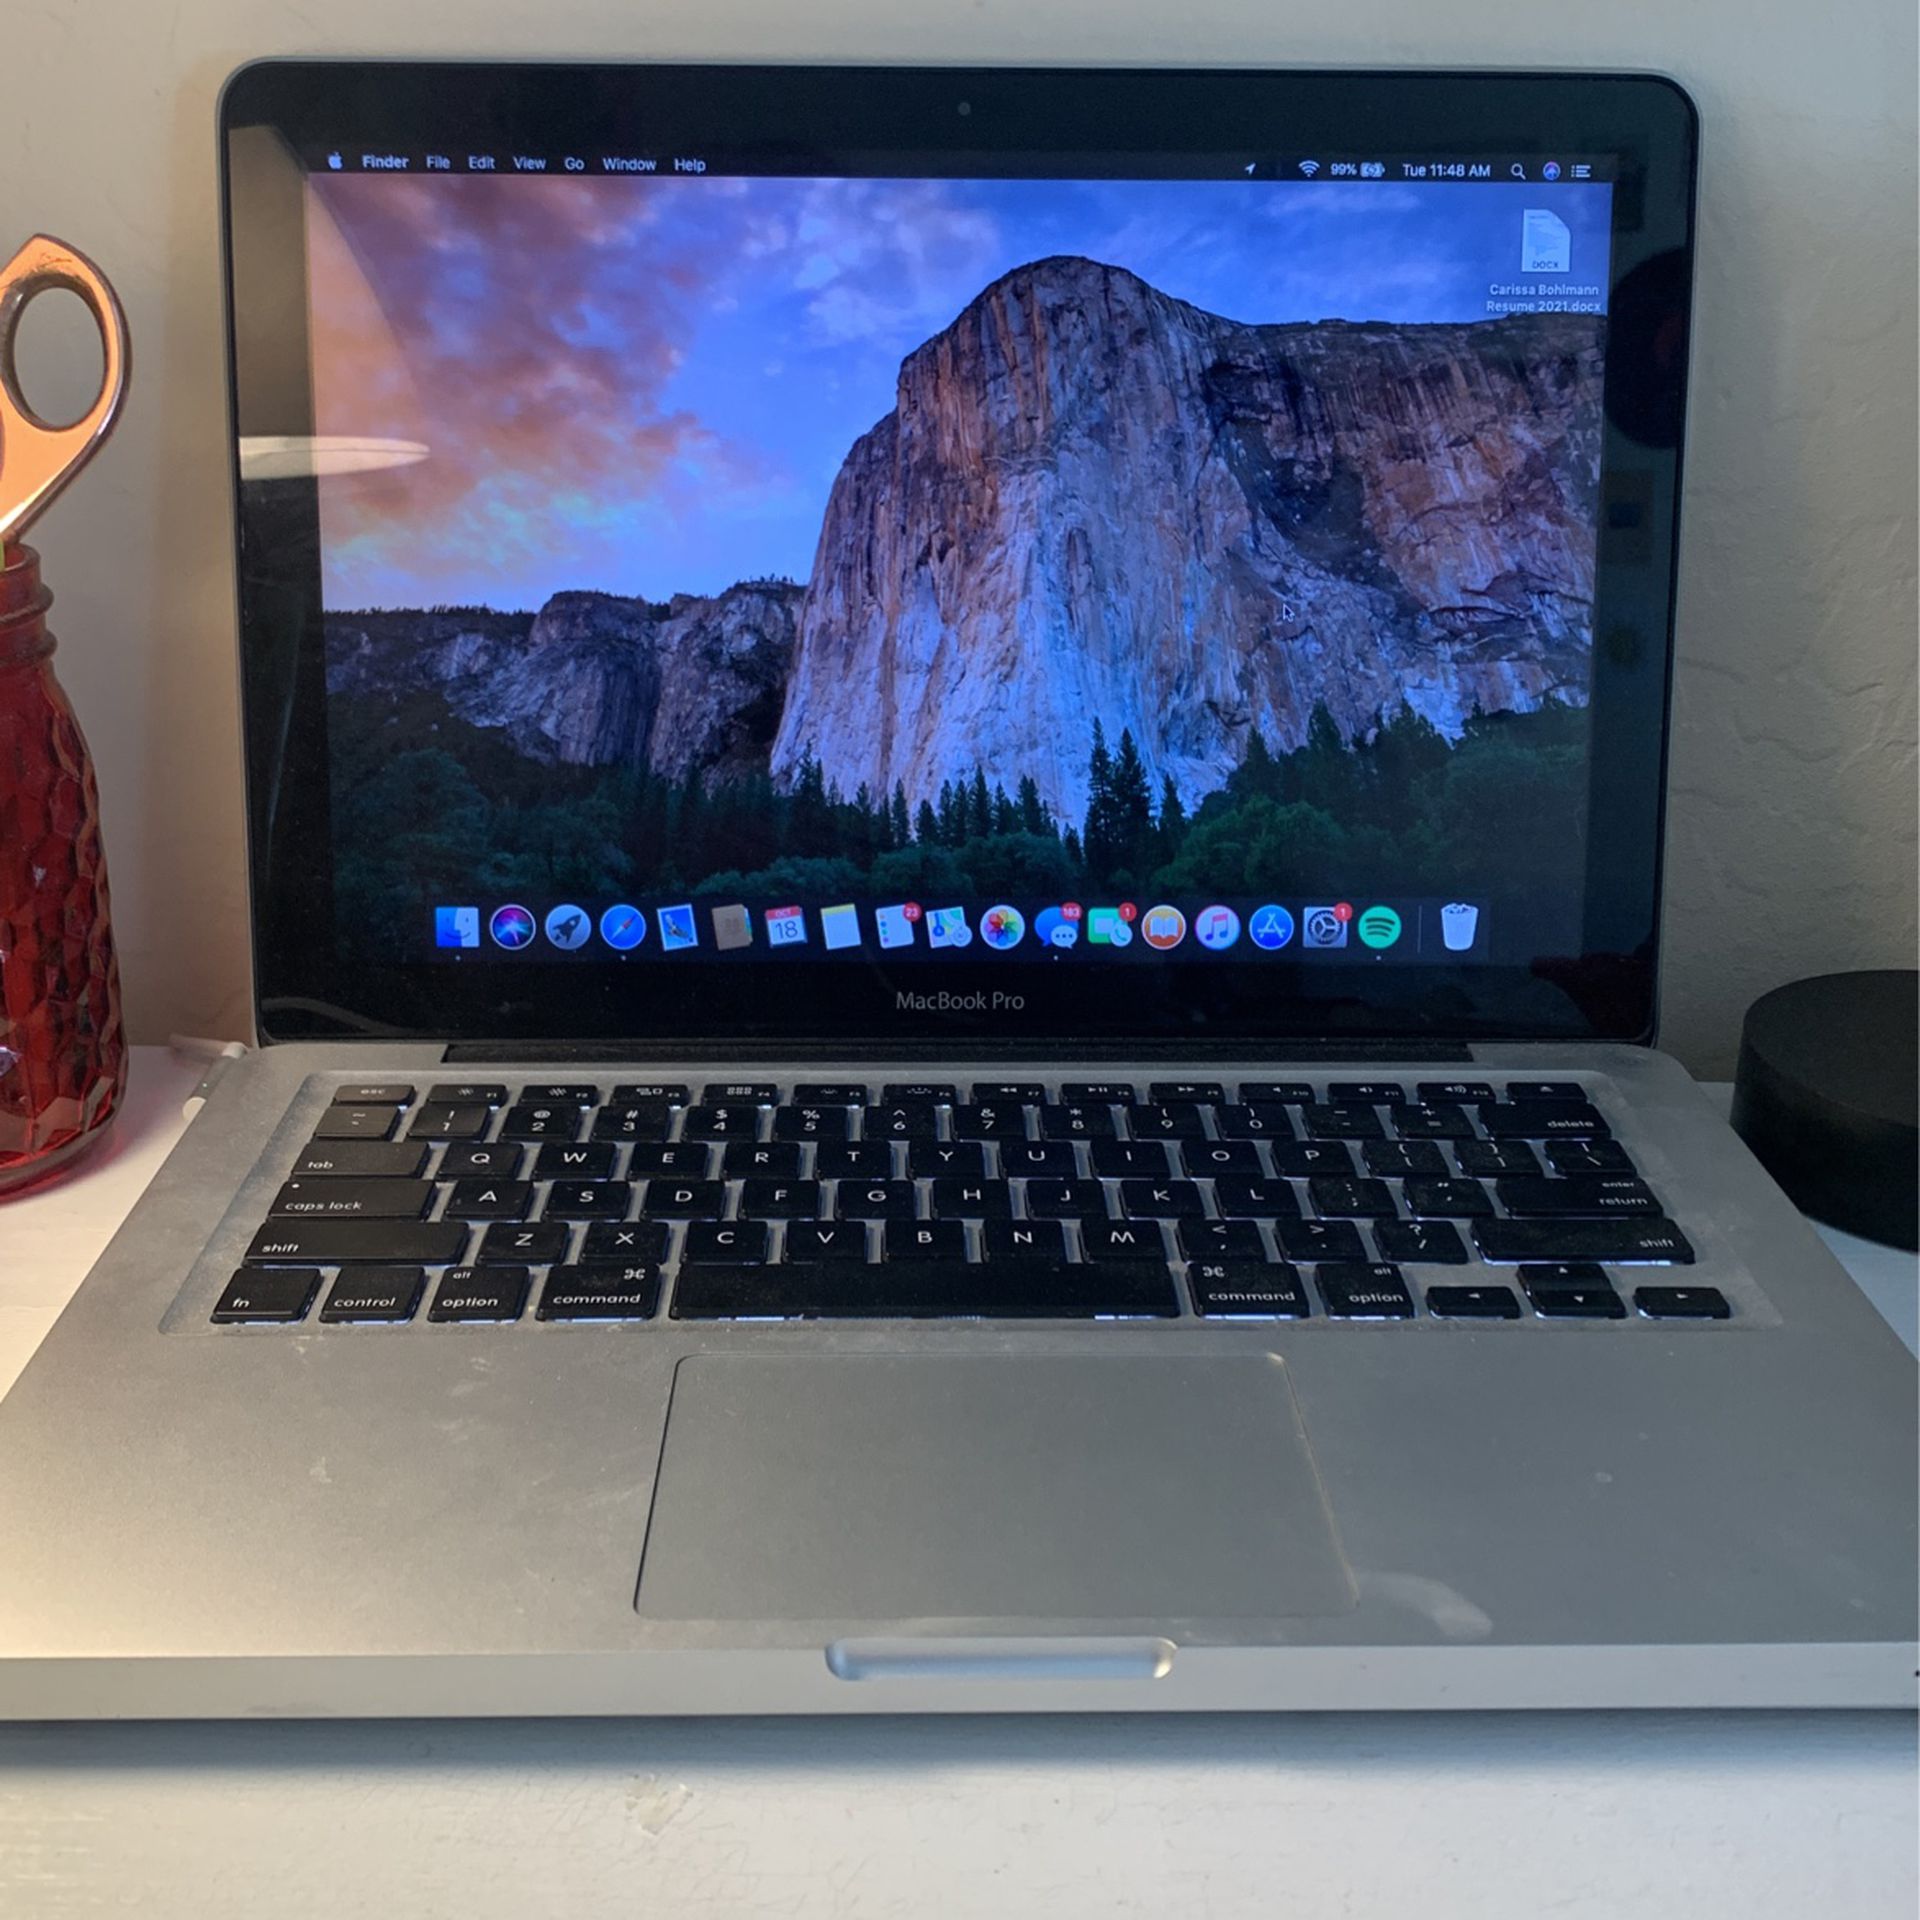 Macbook Pro High Sierra OS (early 2012 model)